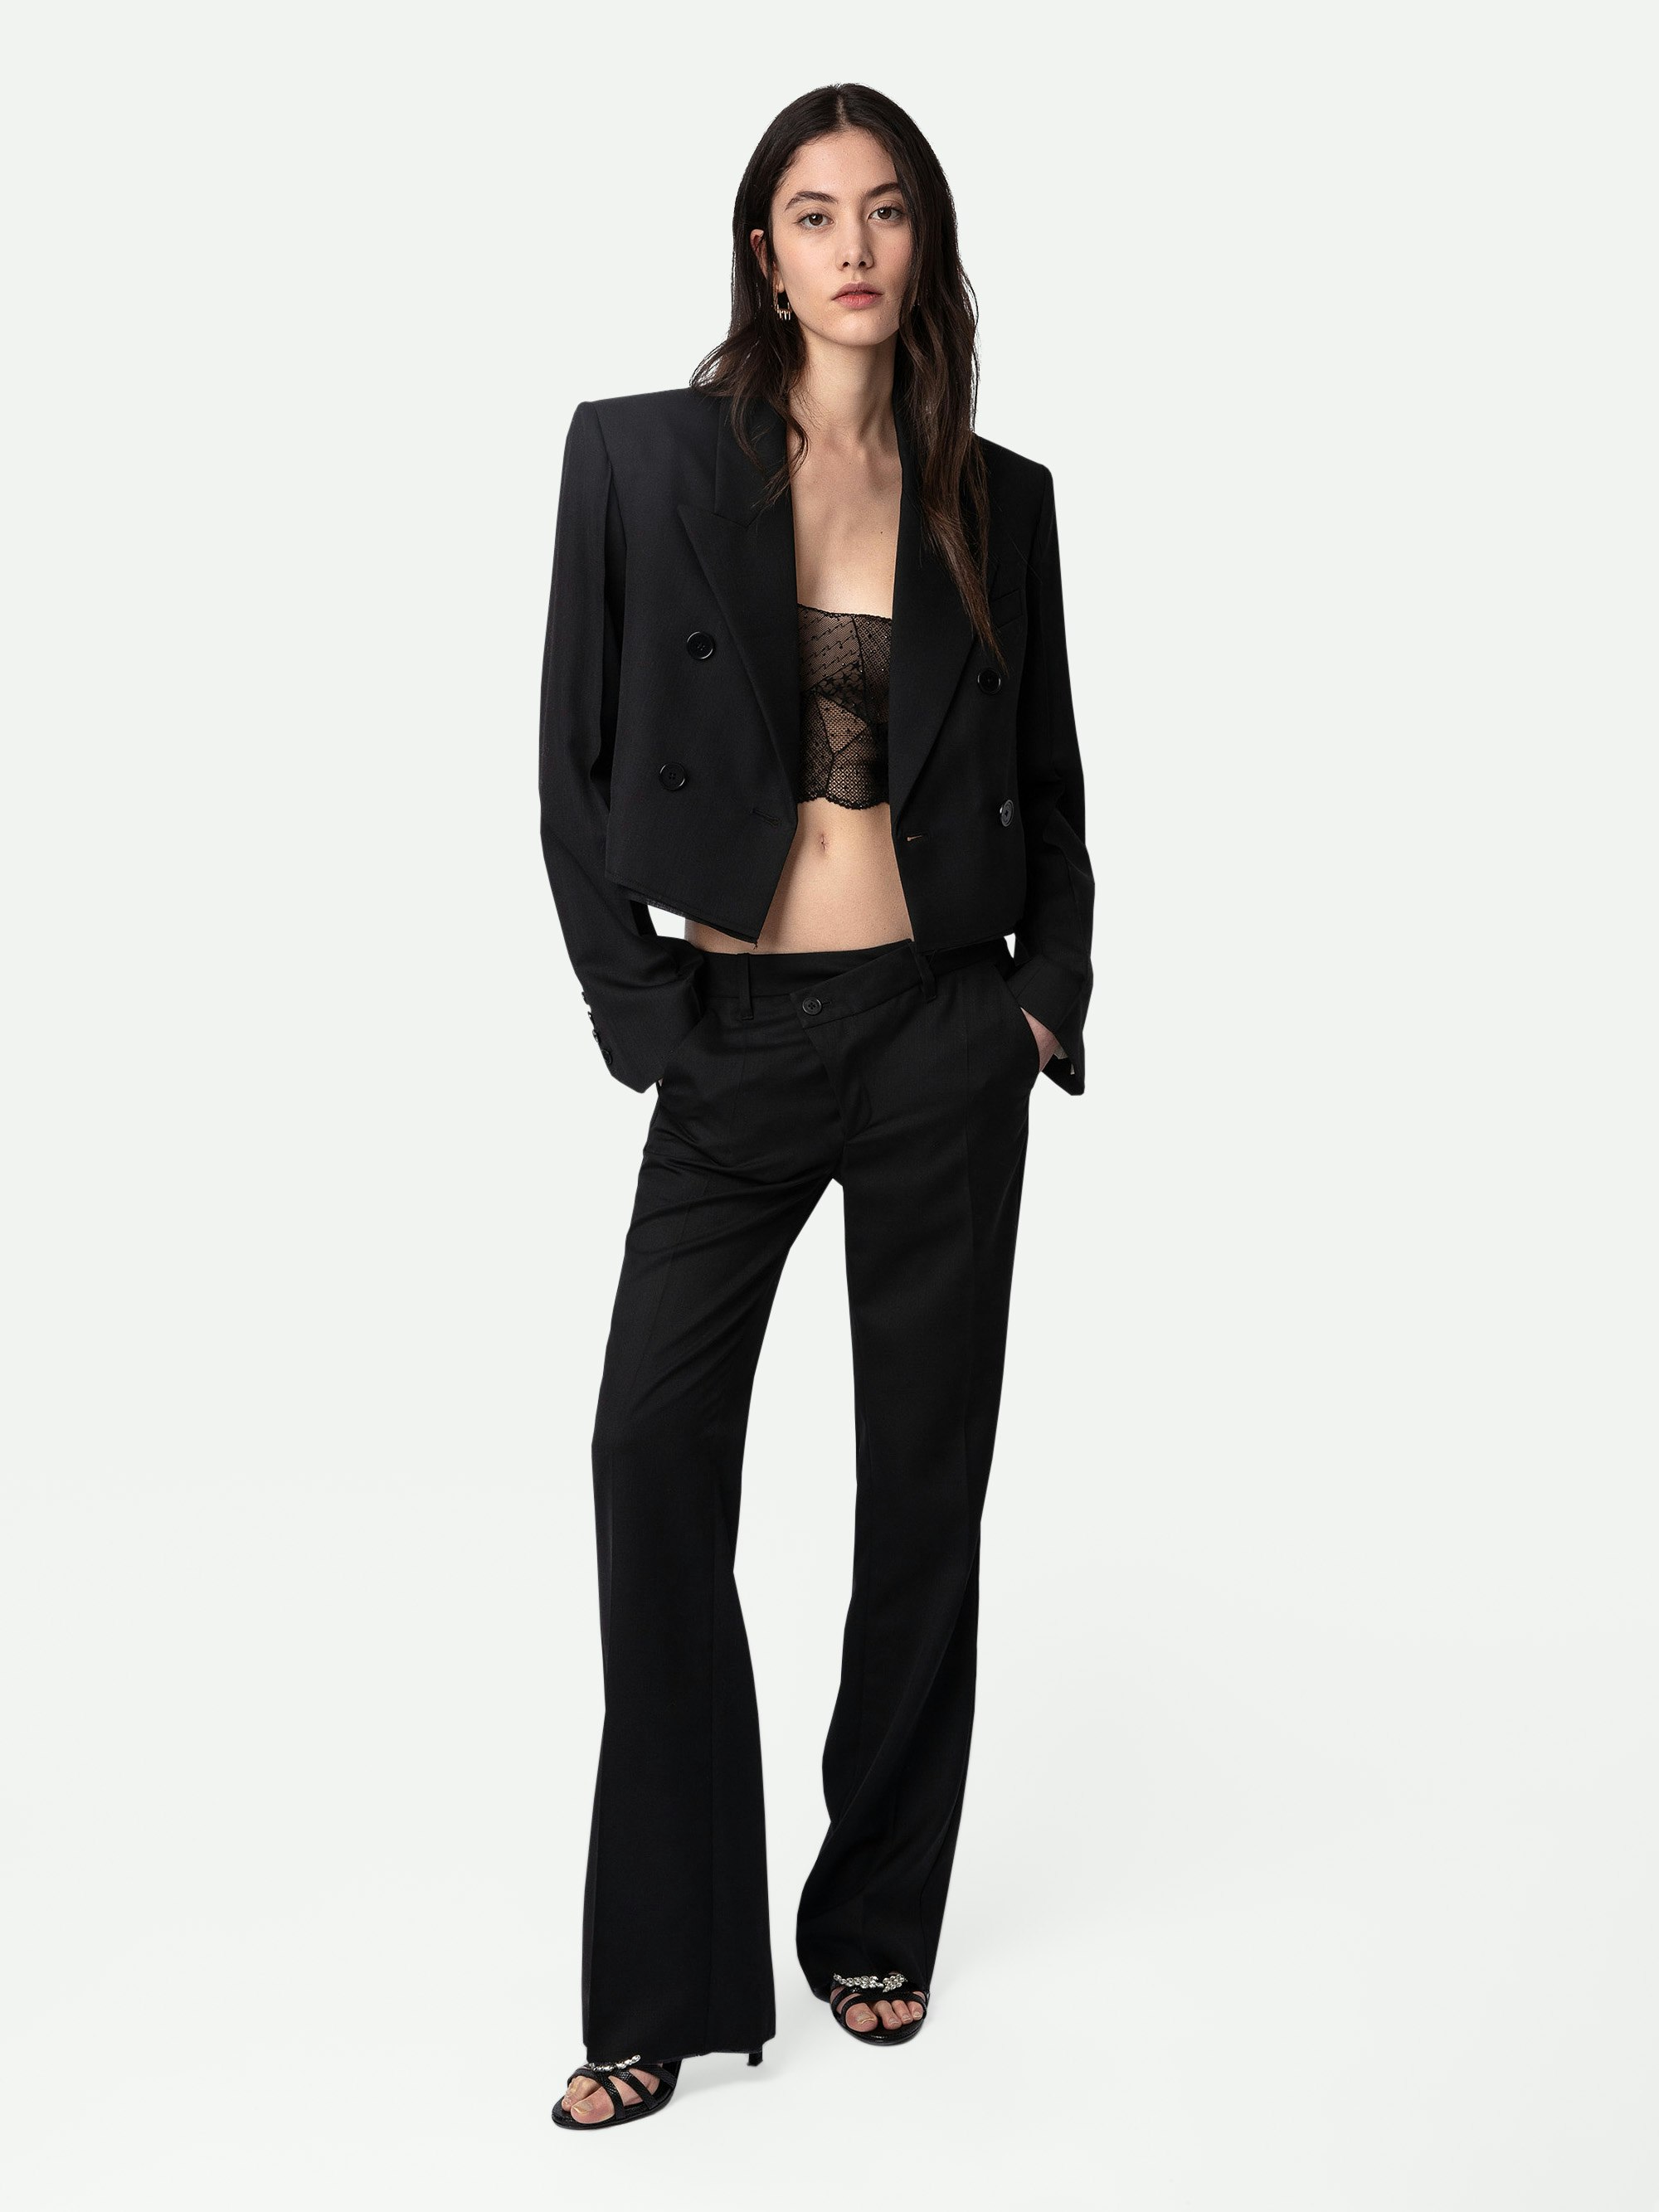 Pantalon Poxy - Pantalon de tailleur ample en laine froide noire à fermeture asymétrique et détails bruts.